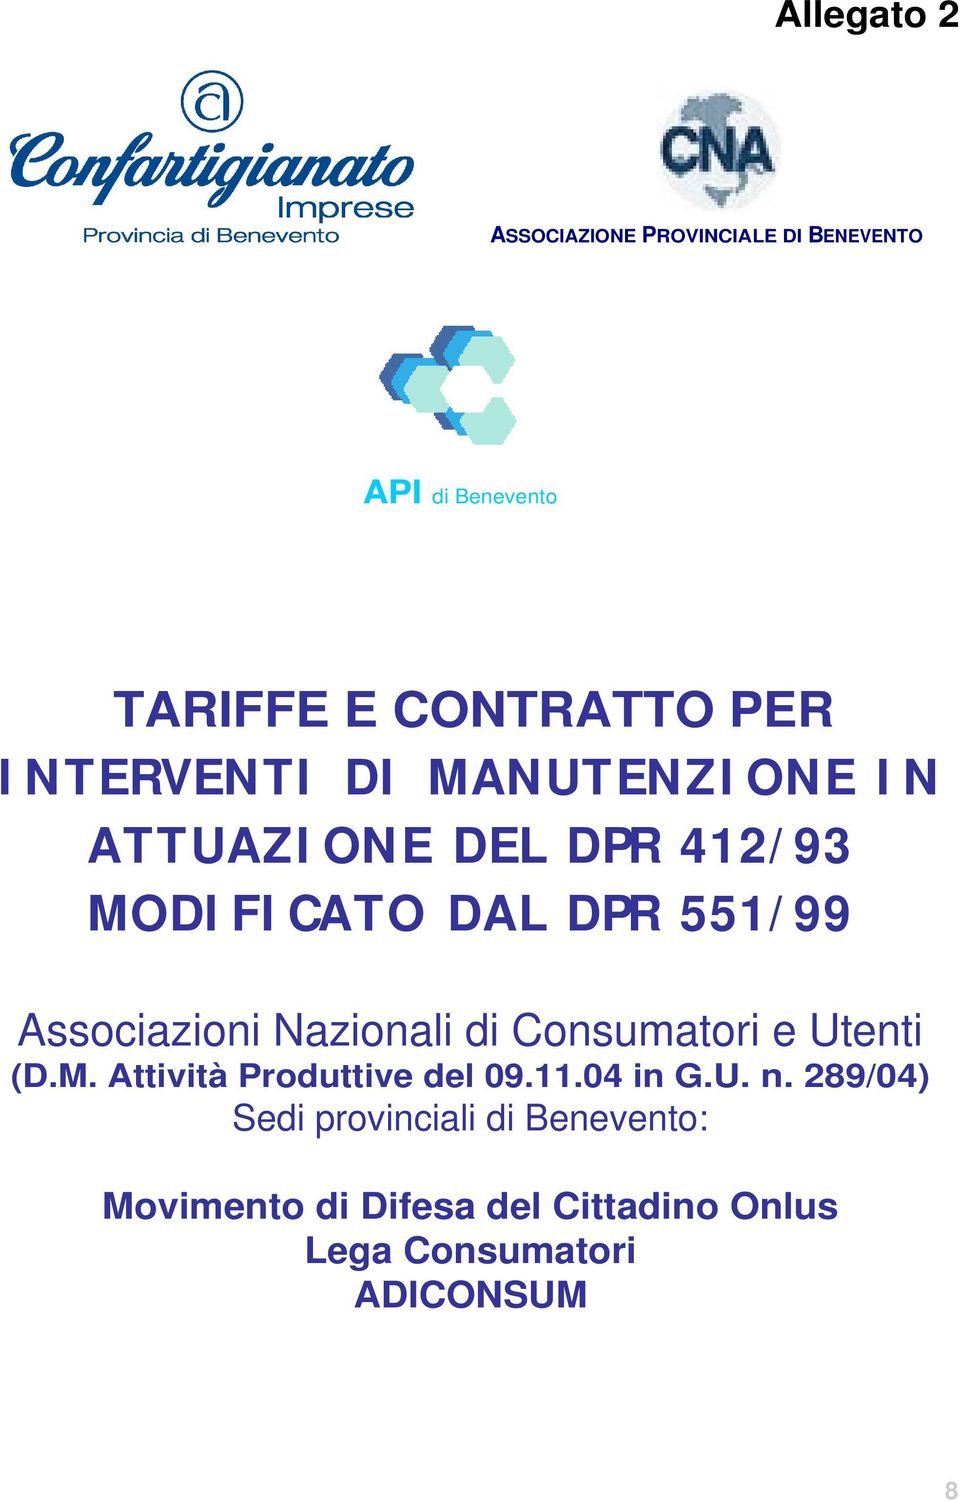 Associazioni Nazionali di Consumatori e Utenti (D.M. Attività Produttive del 09.11.04 in G.U. n.